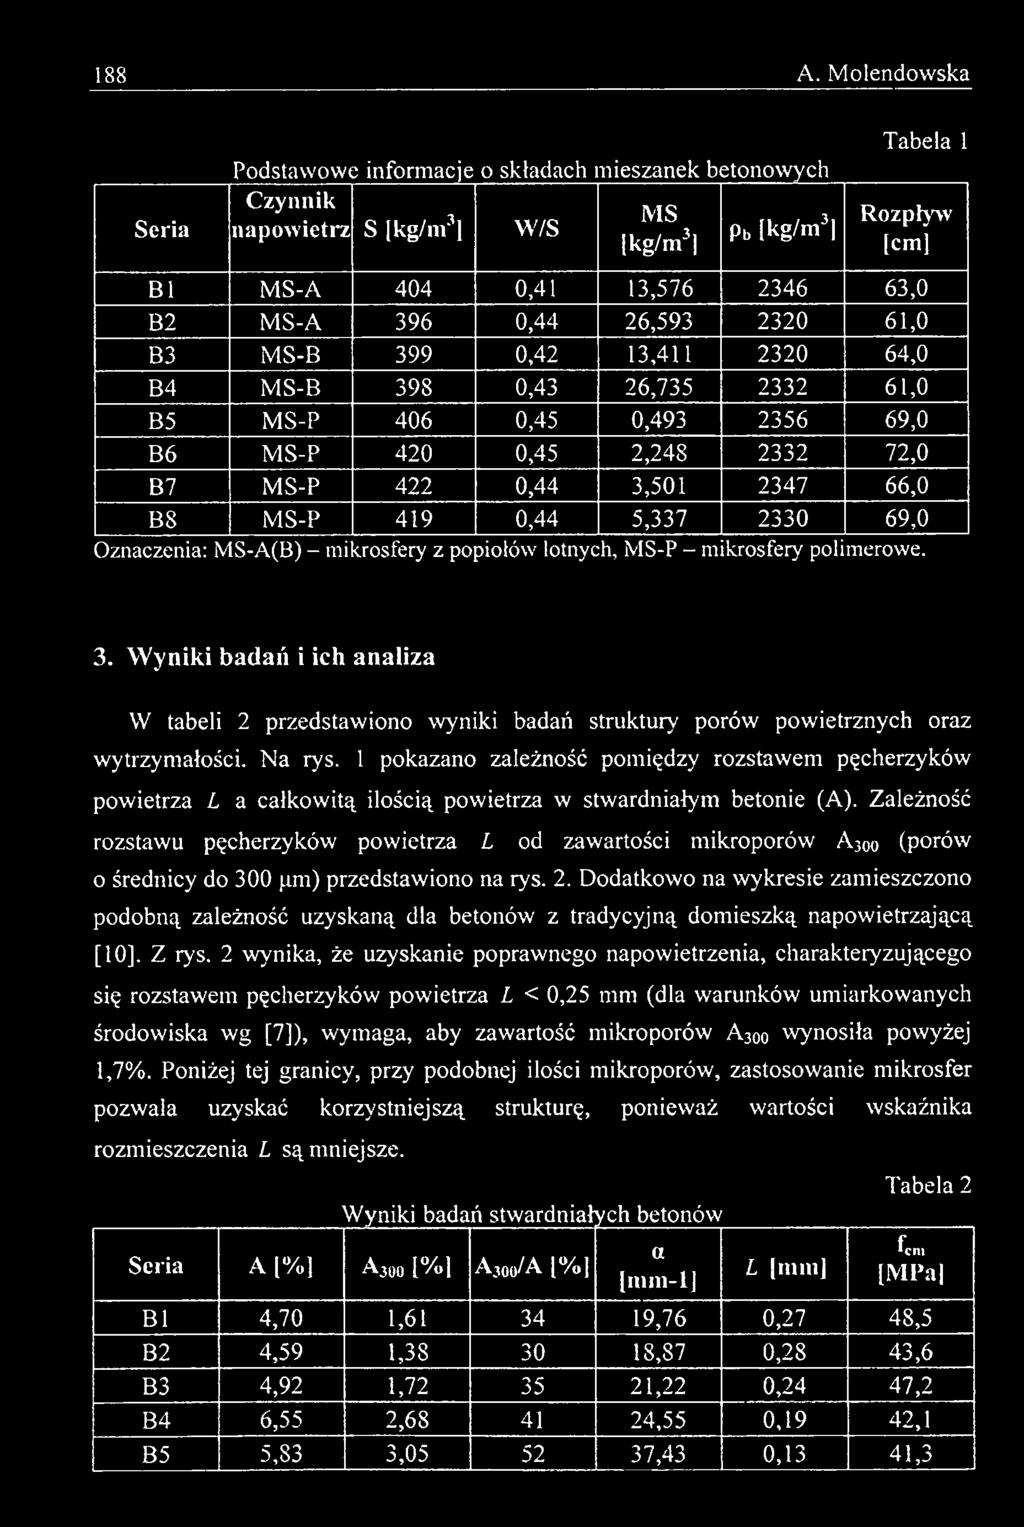 W y n ik i bad ań i ich an aliza W tabeli 2 przedstawiono wyniki badań struktury porów powietrznych oraz wytrzymałości. Na rys.